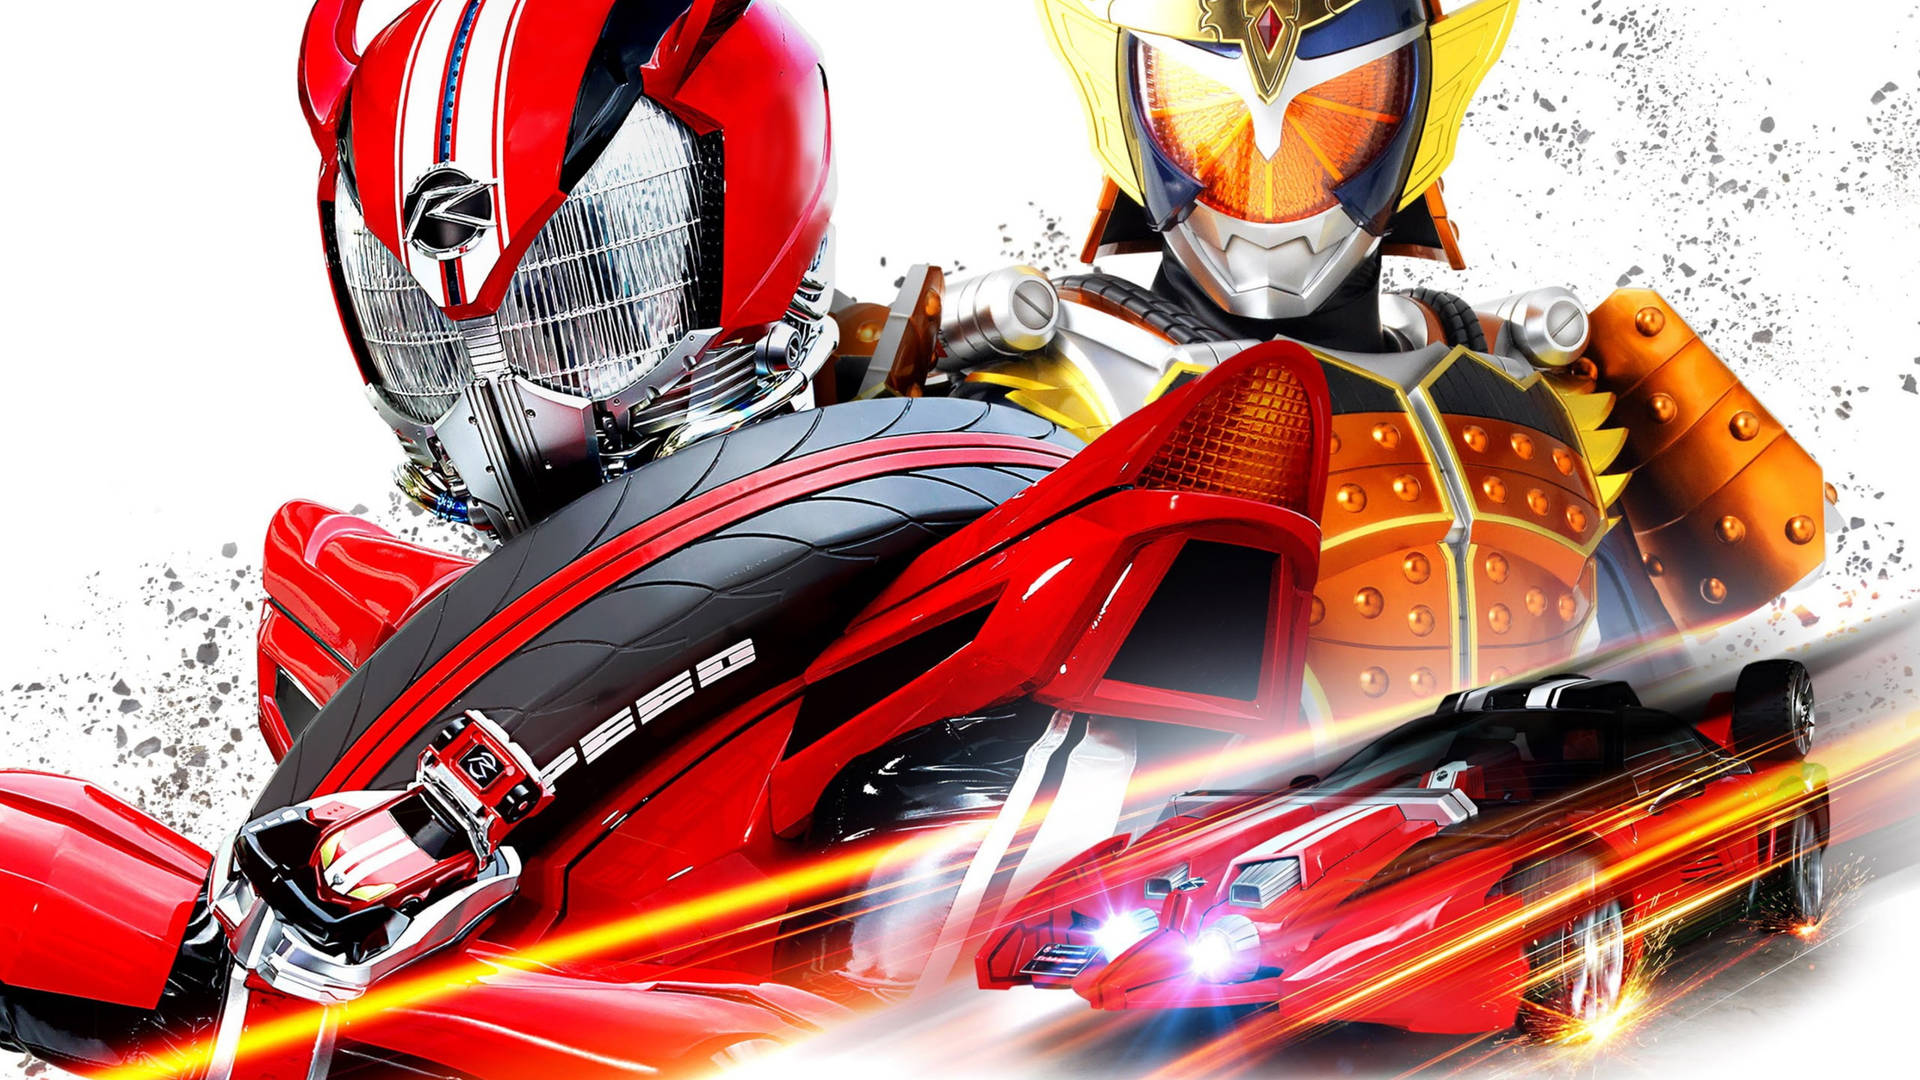 Cool Japanese Kamen Rider